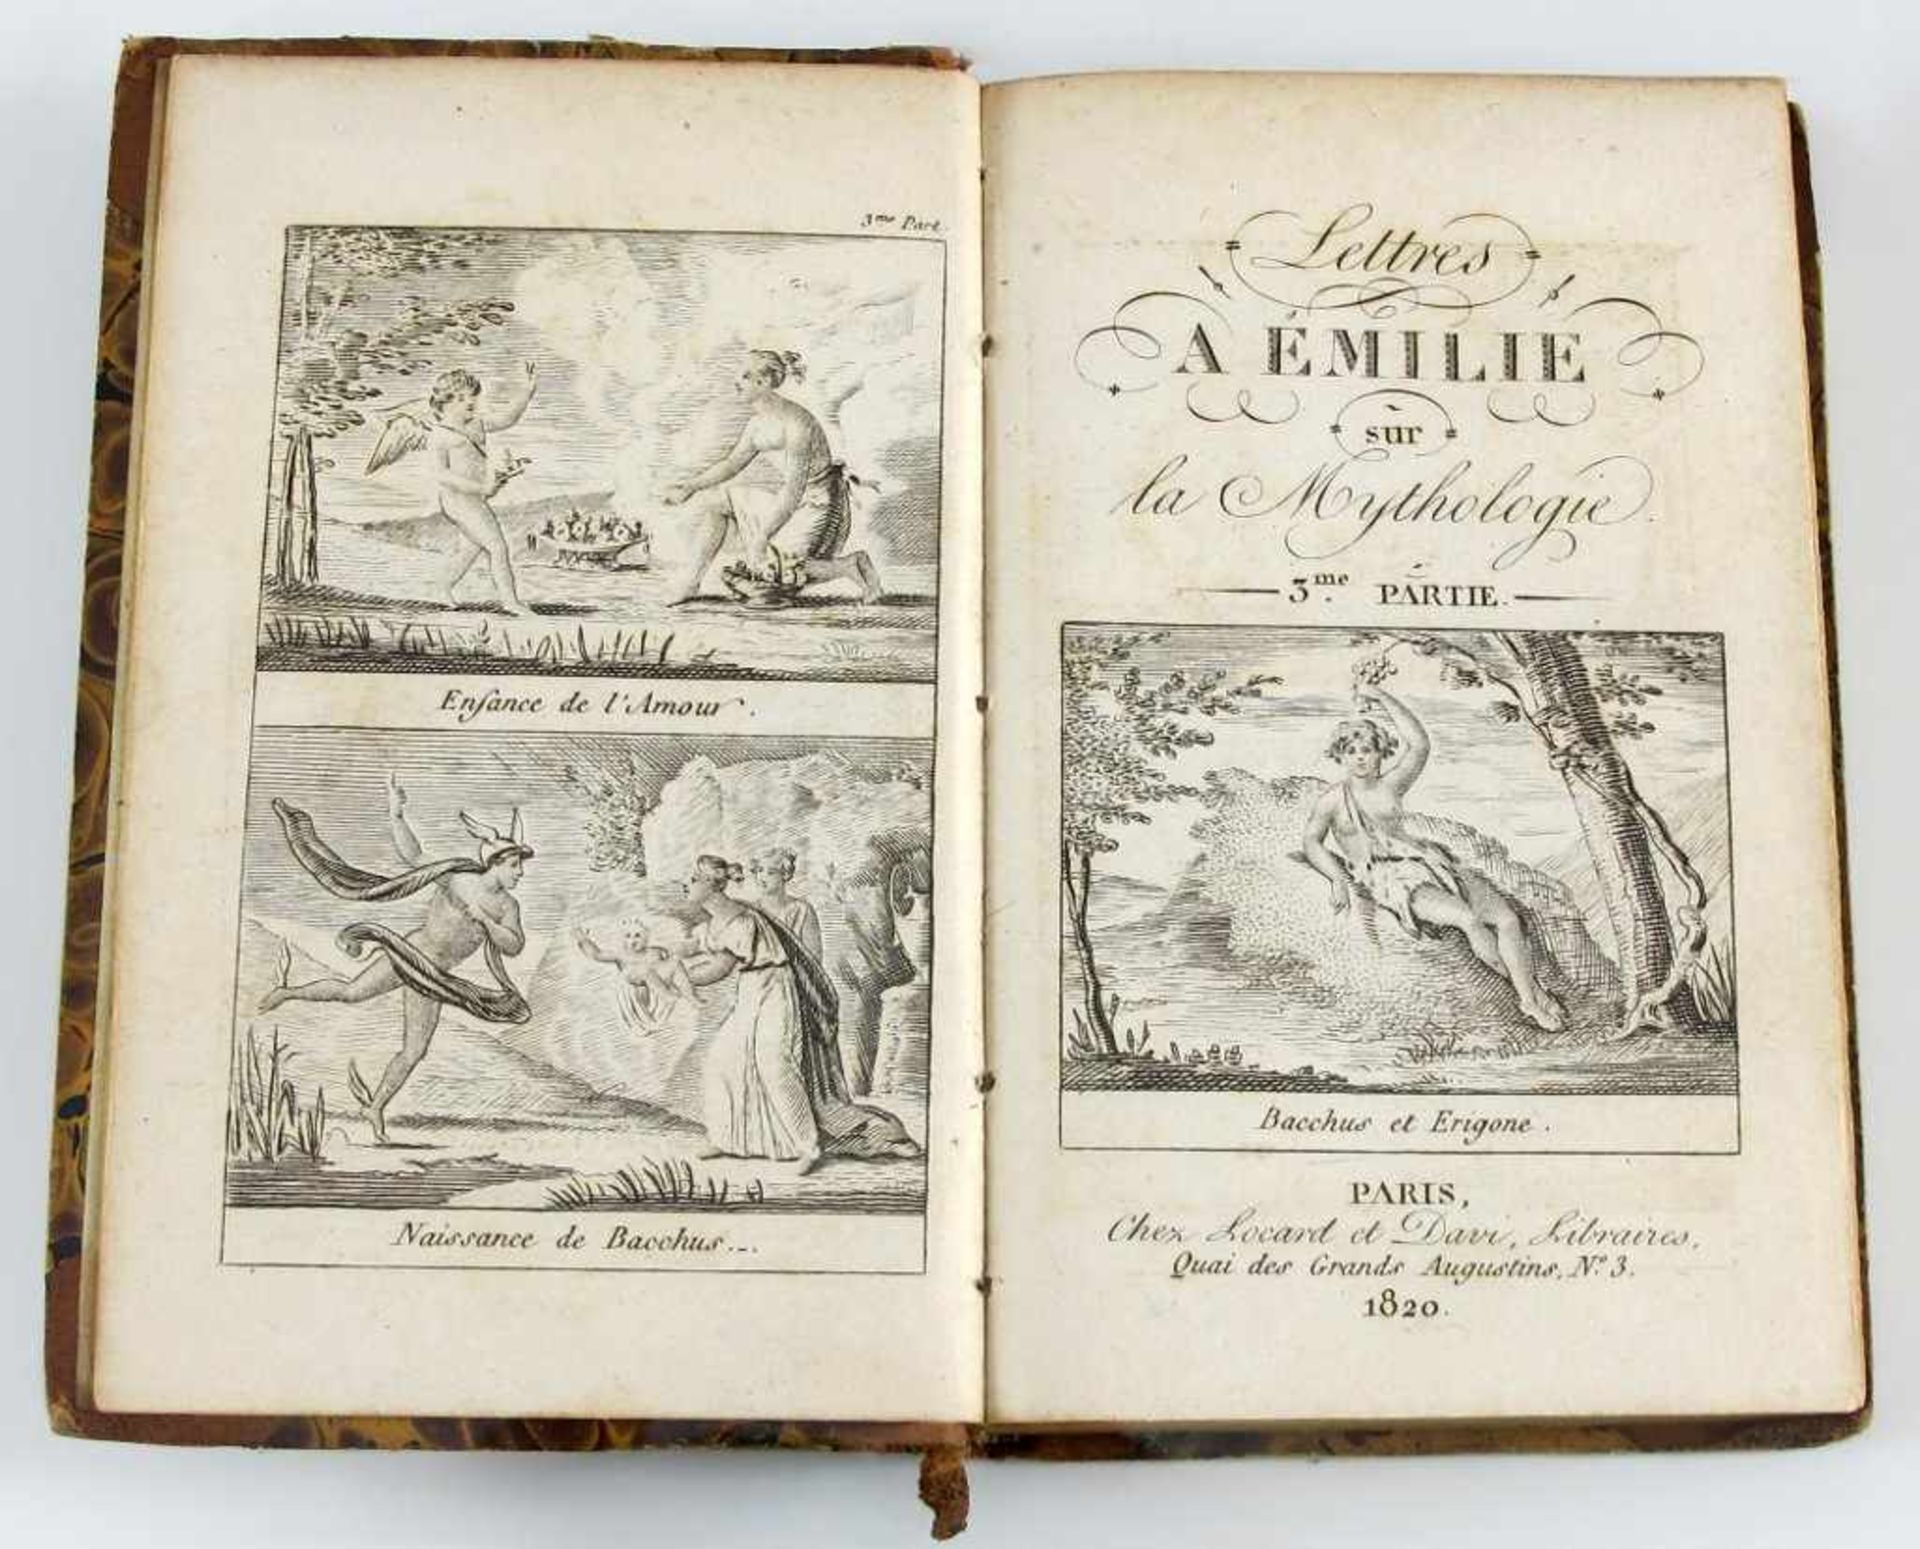 (Demoustier, Charles-Albert) Lettres a Emilie sur la Mythologie. Paris, chez Locard et Davi, 1820.